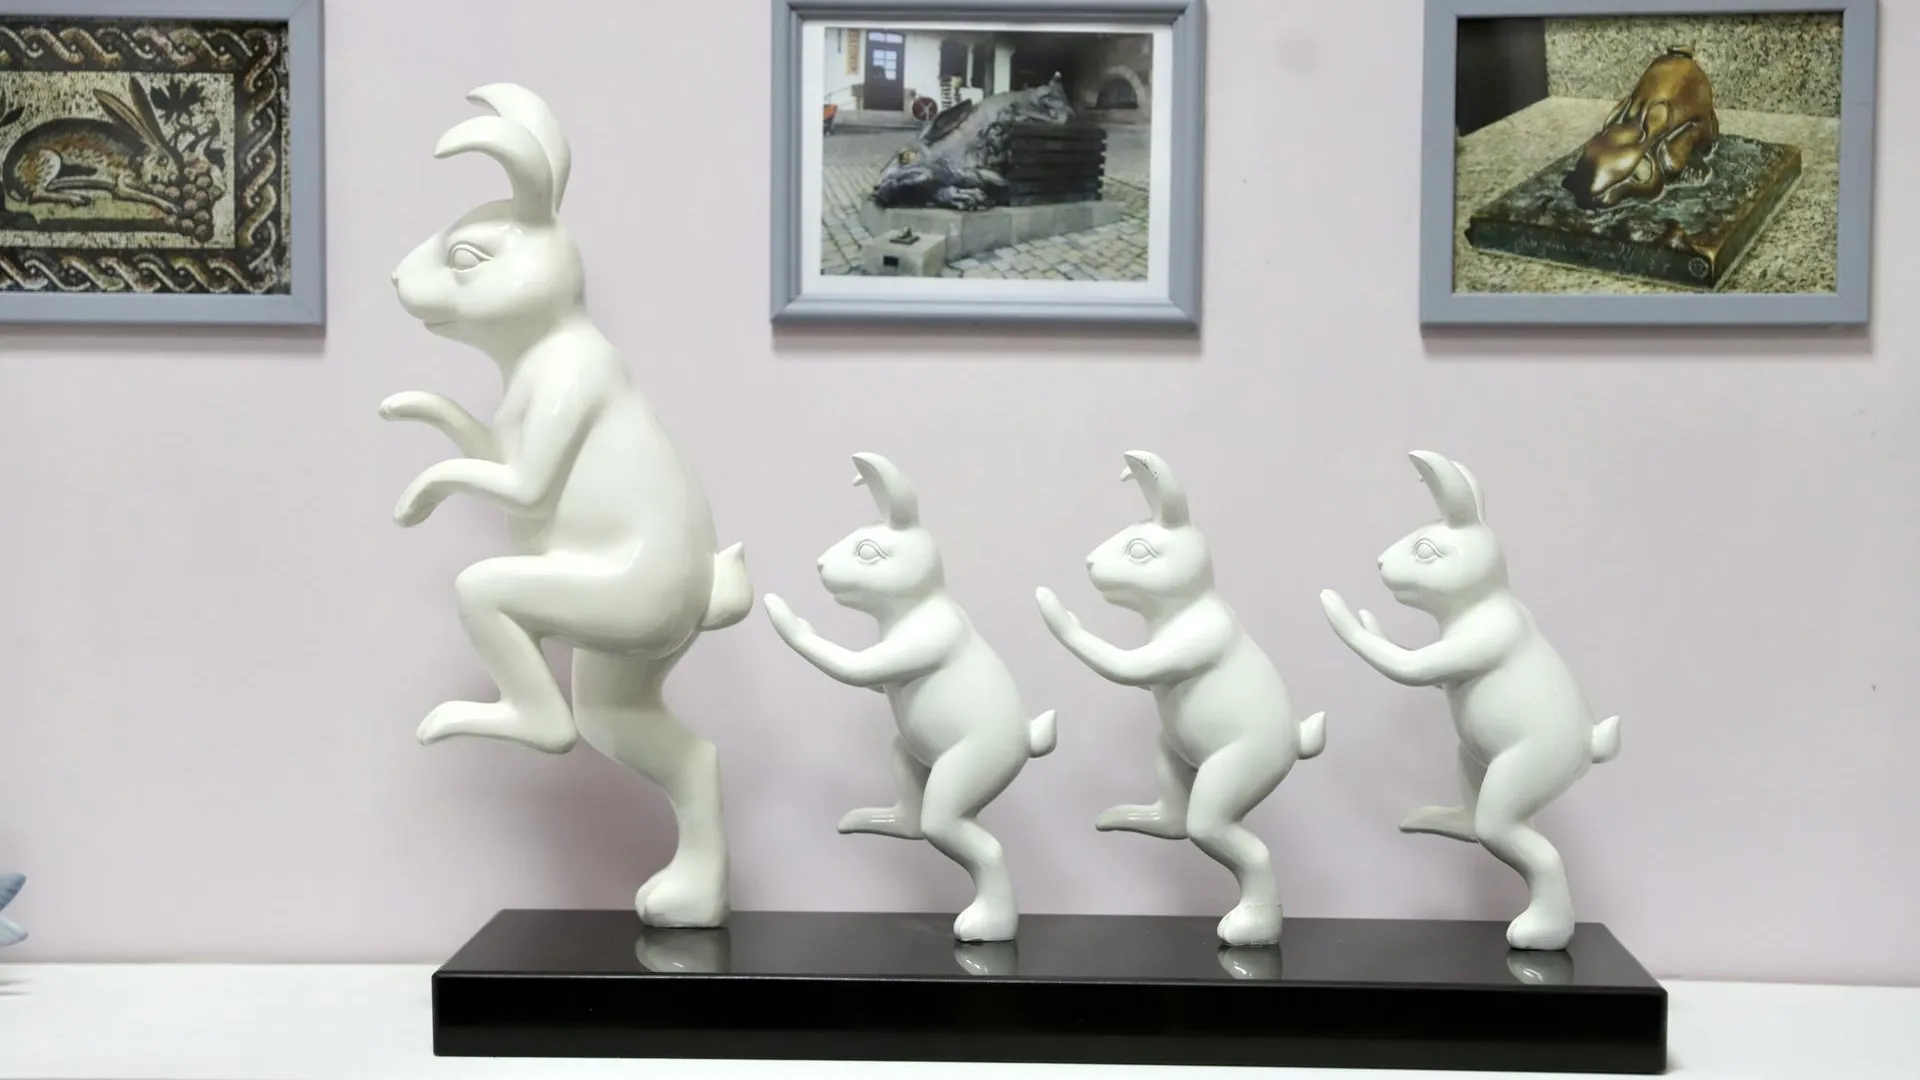 Музей кролика и зайца открыли в Солнечногорске